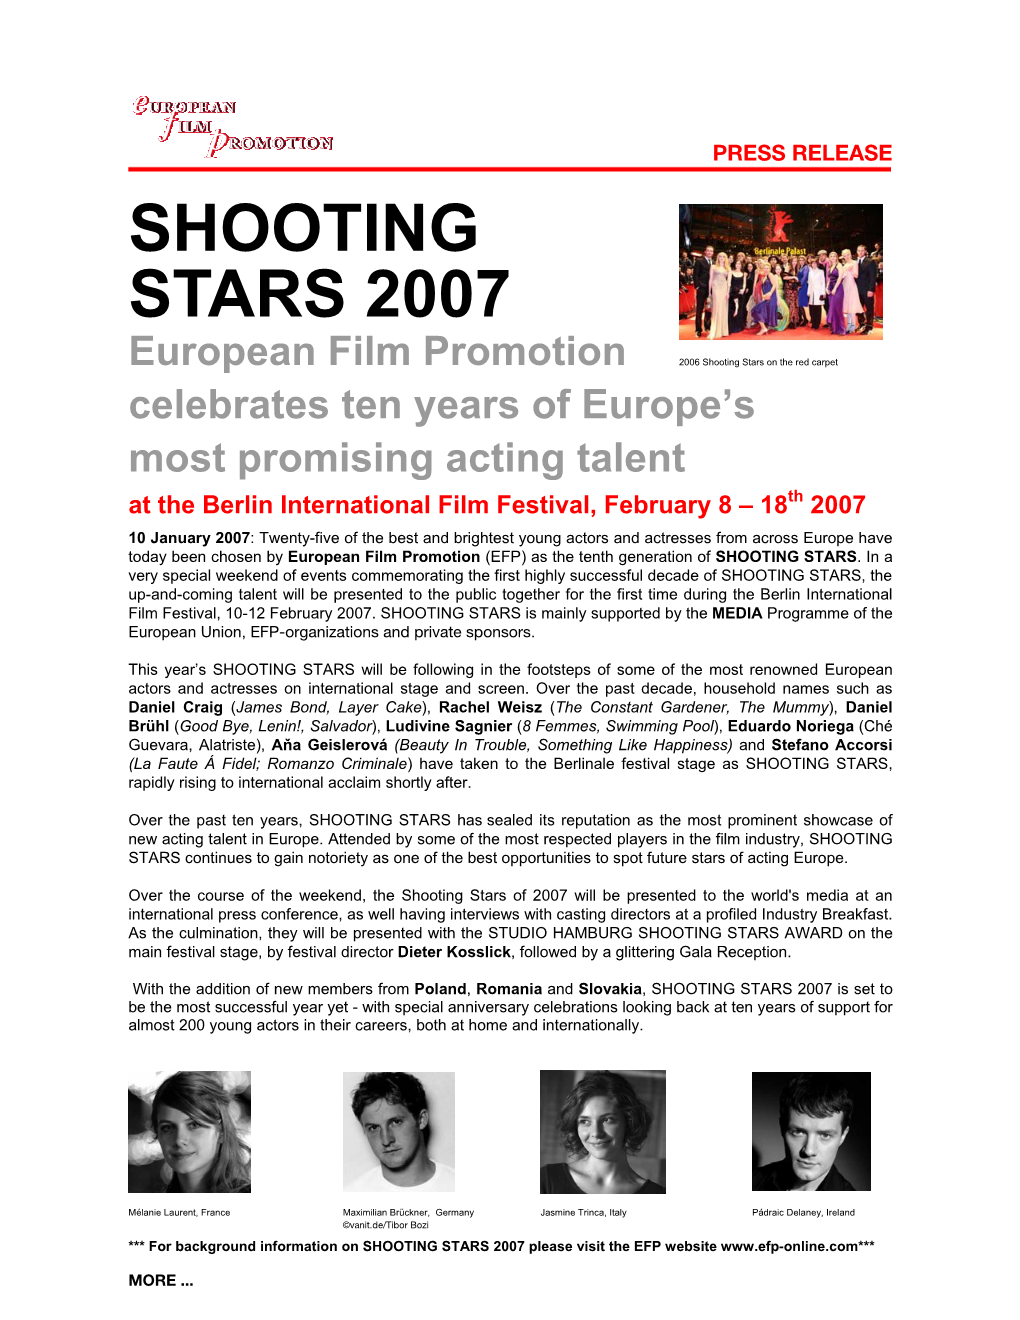 Shooting Stars 2007